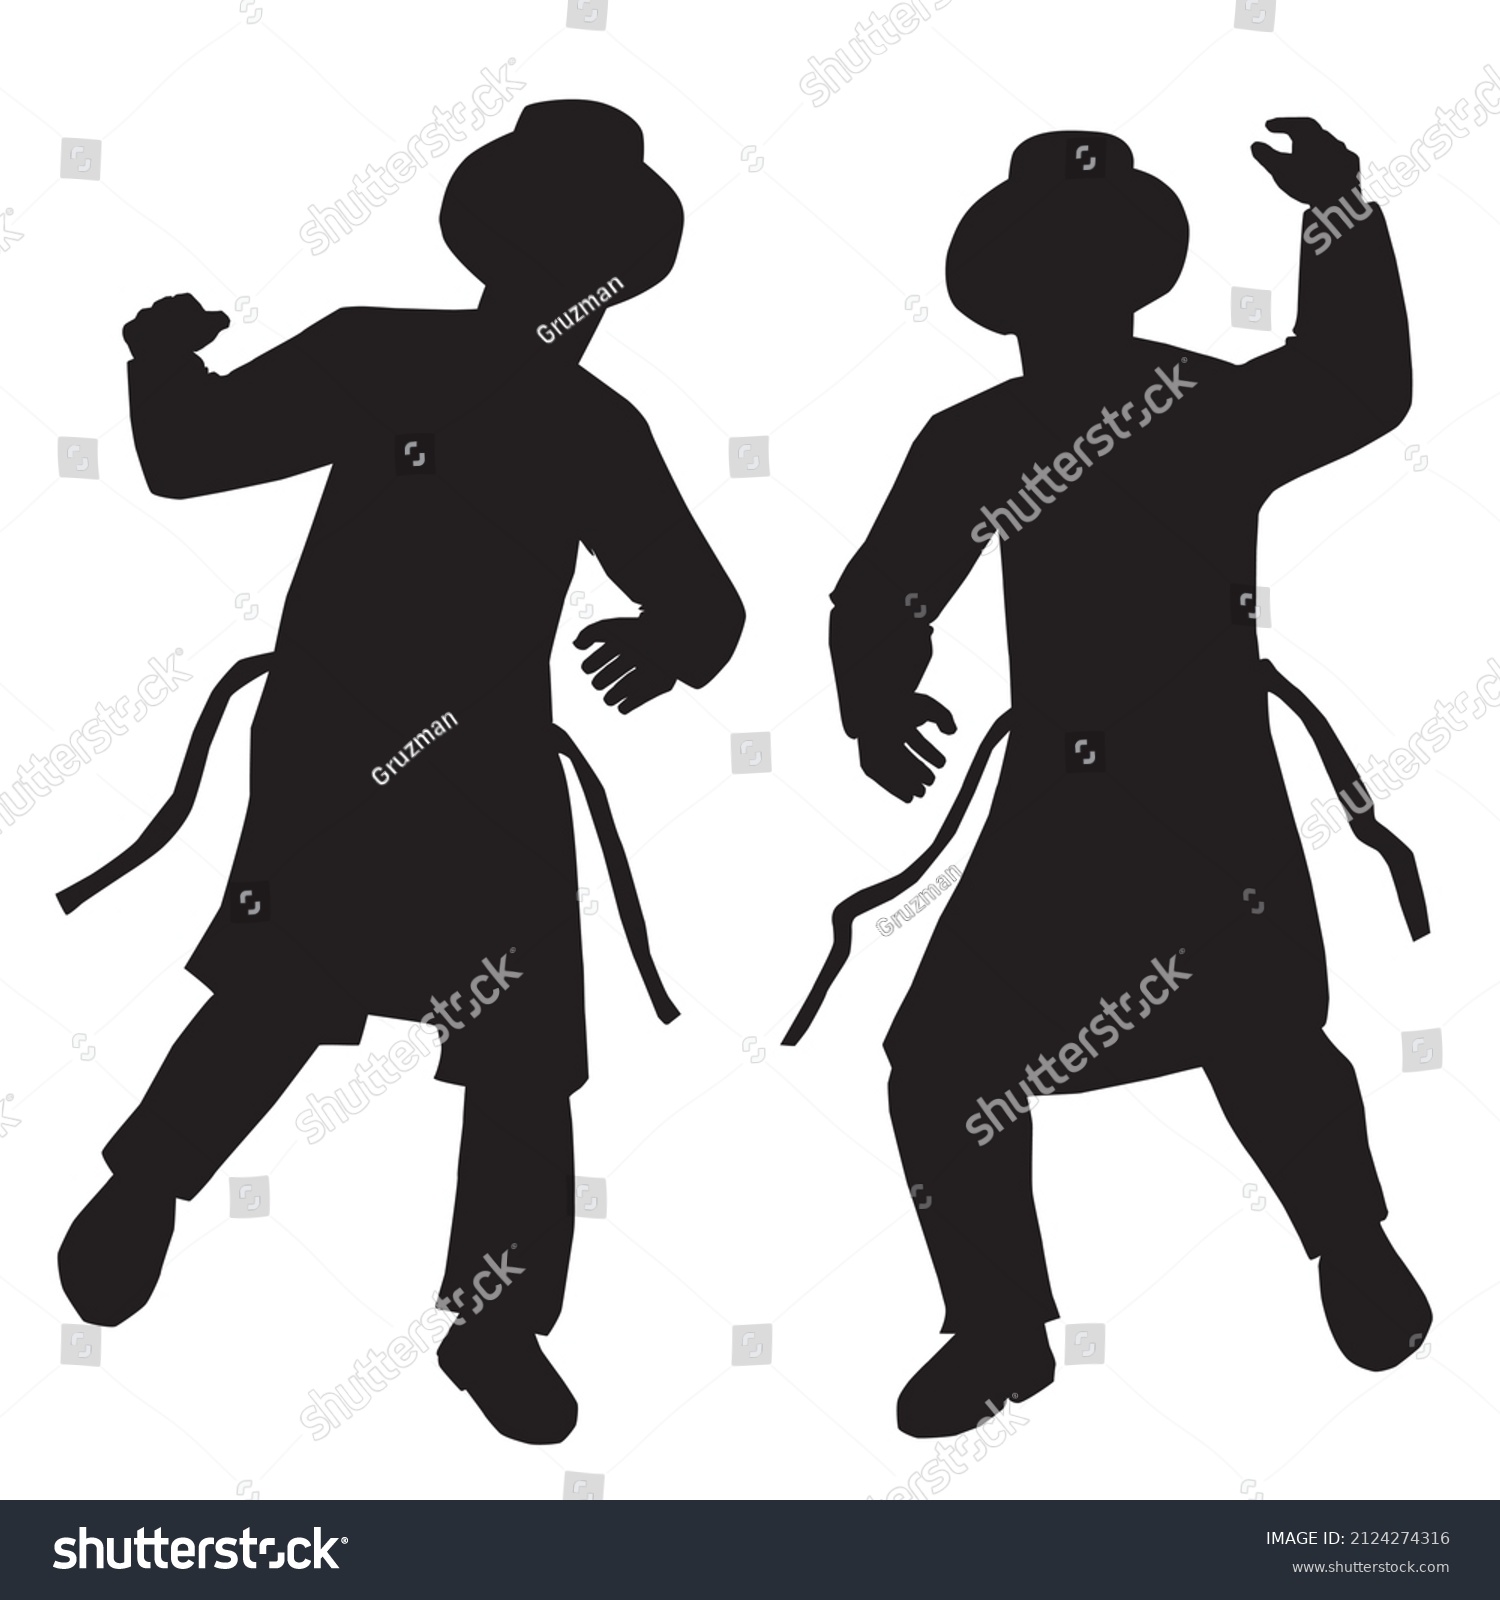 צללית שחורה וקטורית וקטור ווקטורי 2 שני שתי חסידים רוקדים שמחים ריקוד מגבעת חליפה גרטל חסידי א...jpg